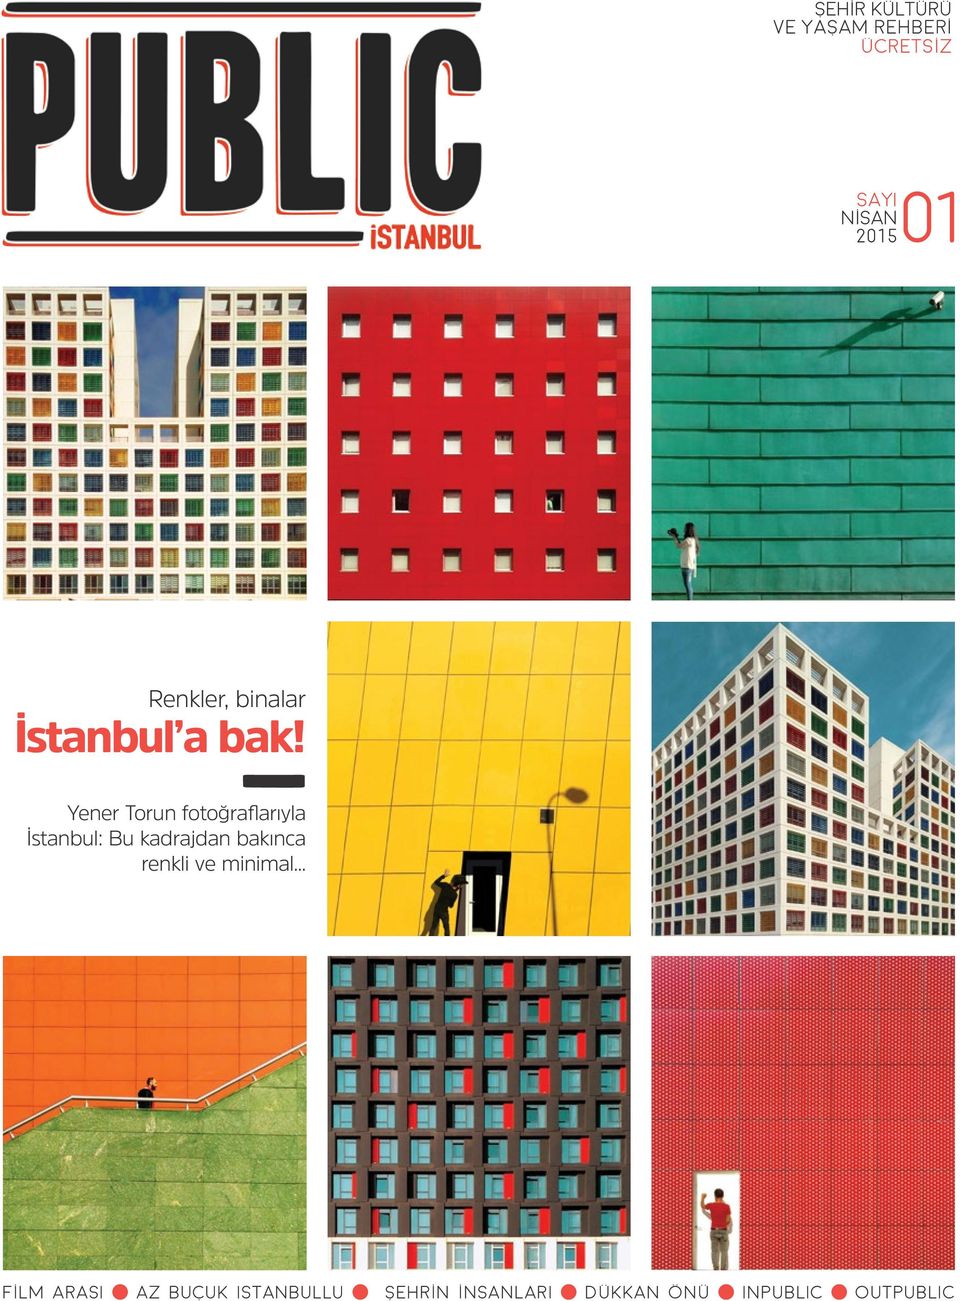 Yener Torun fotoğraflarıyla İstanbul: Bu kadrajdan bakınca